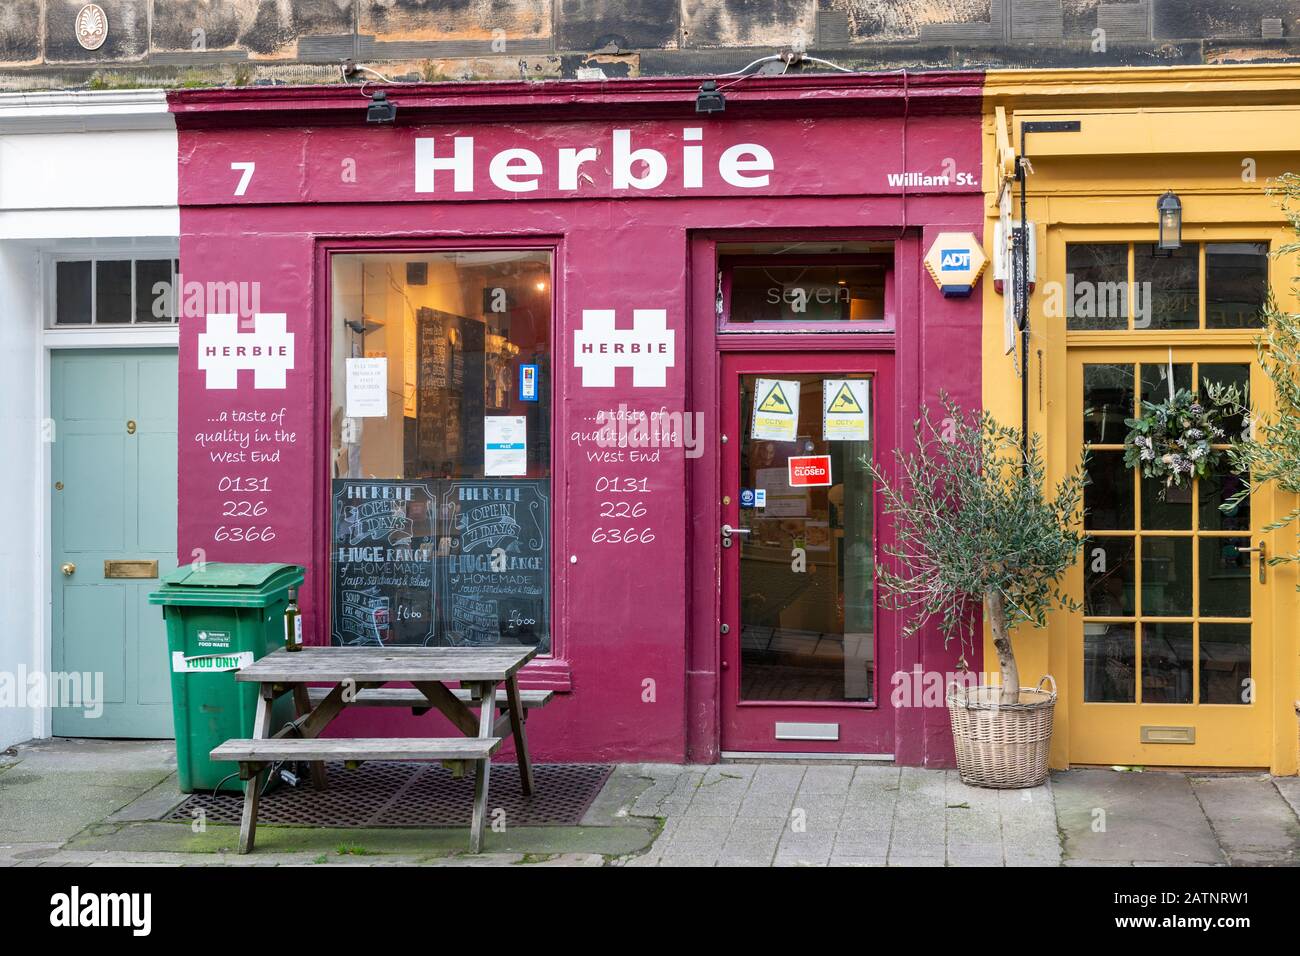 Herbie West End, ein Backwaren- und Brötchengeschäft, in der William Street im West End von Edinburgh, Schottland, Großbritannien Stockfoto